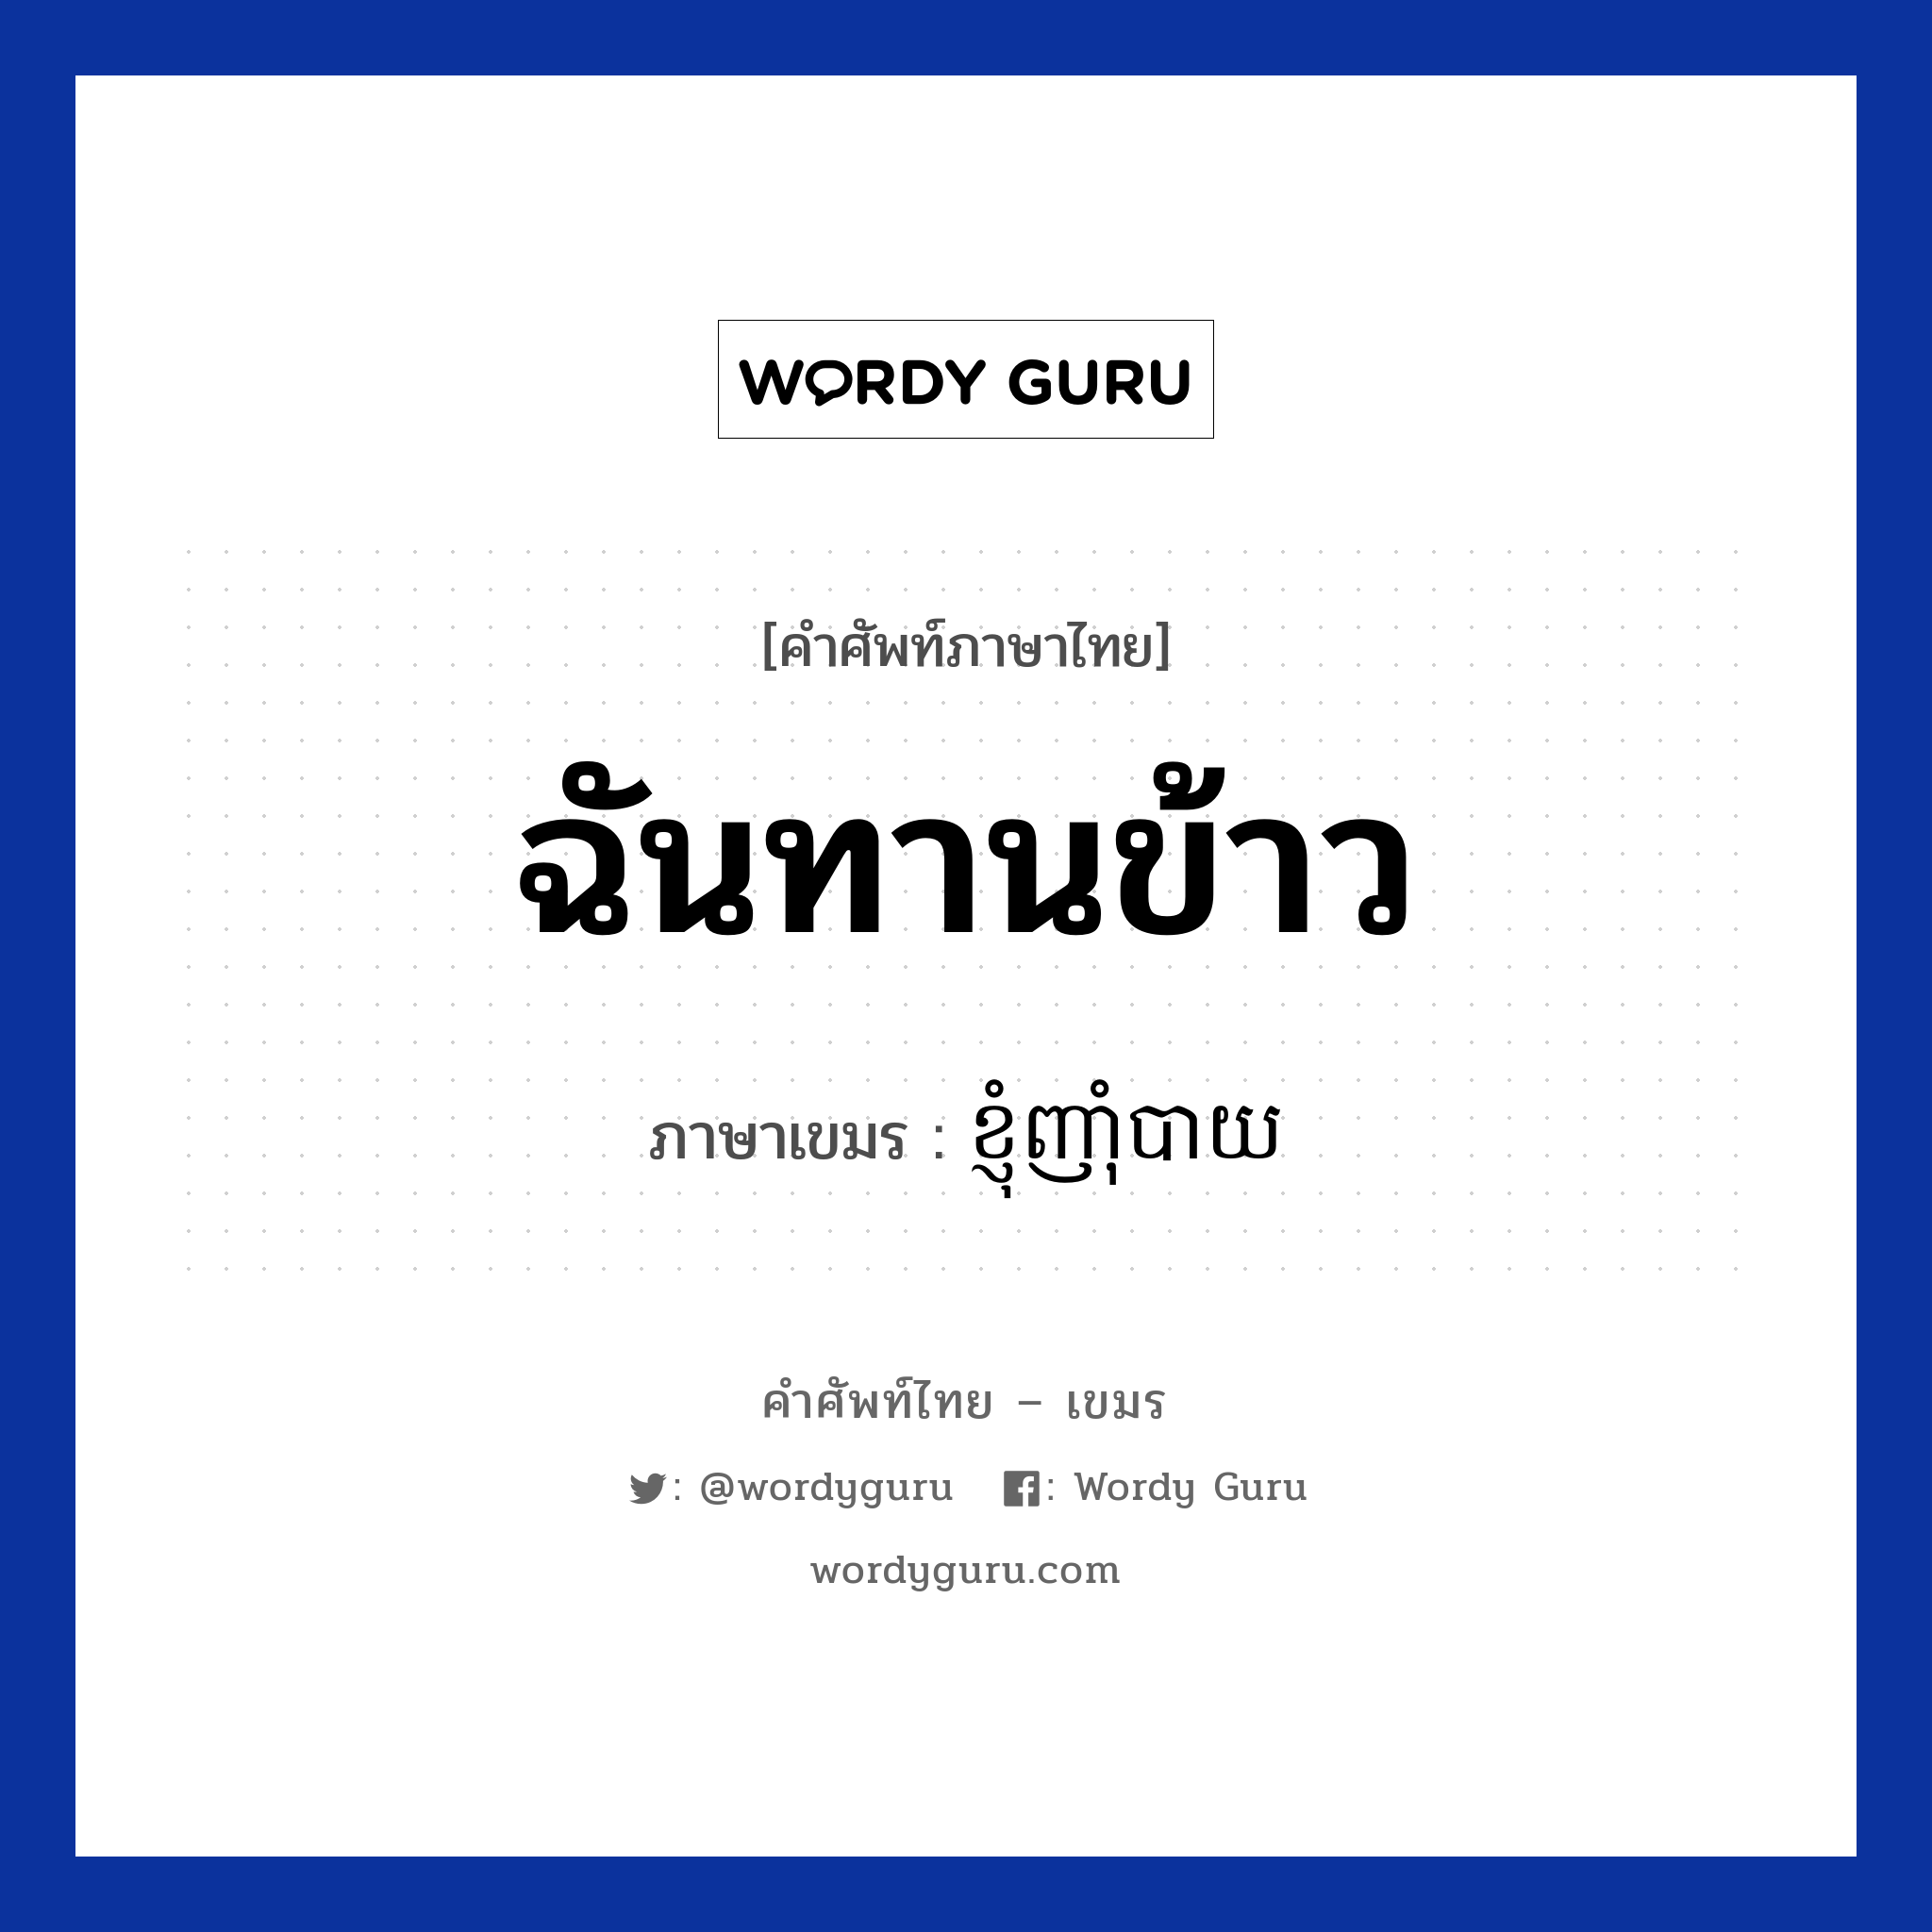 ฉันทานข้าว ภาษาเขมรคืออะไร, คำศัพท์ภาษาไทย - เขมร ฉันทานข้าว ภาษาเขมร ខ្ញុំញាំុបាយ หมวด ทักทาย Knhom nhambay หมวด ทักทาย